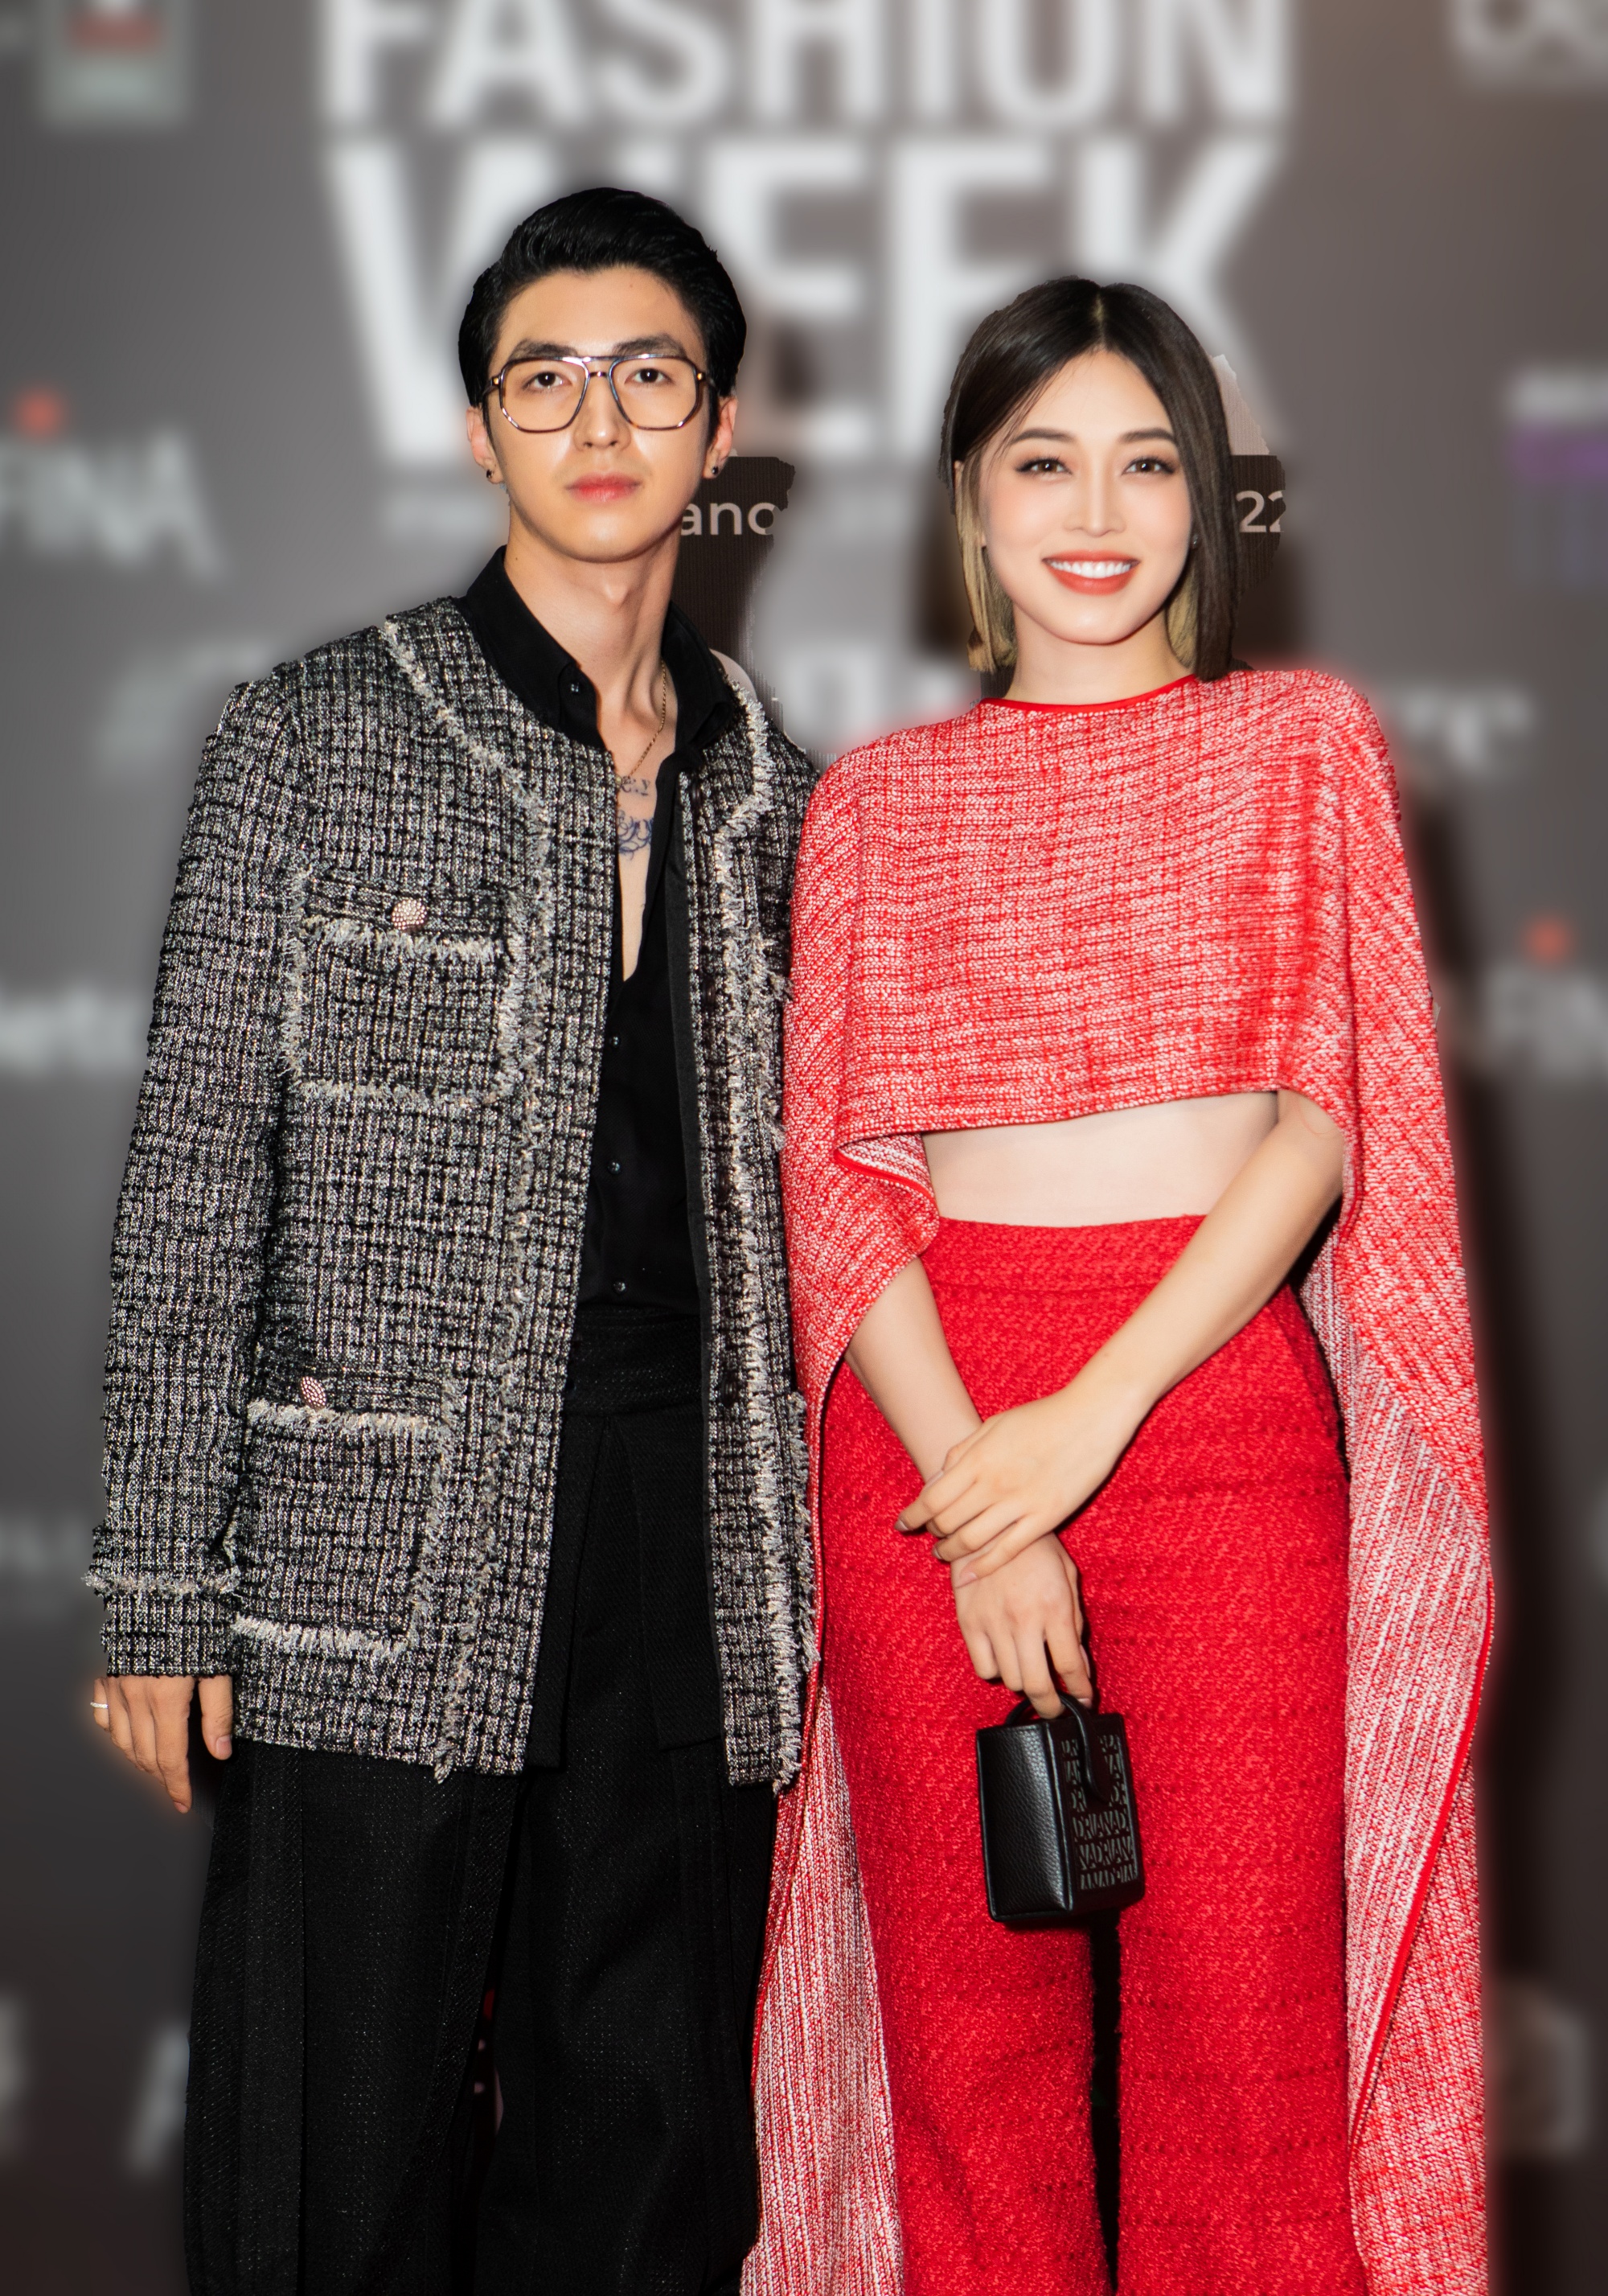 Vợ chồng Bình An - Phương nga hội ngộ cùng dàn diễn viên VTV trên thảm đỏ mở màn Tuần lễ thời trang - Ảnh 1.